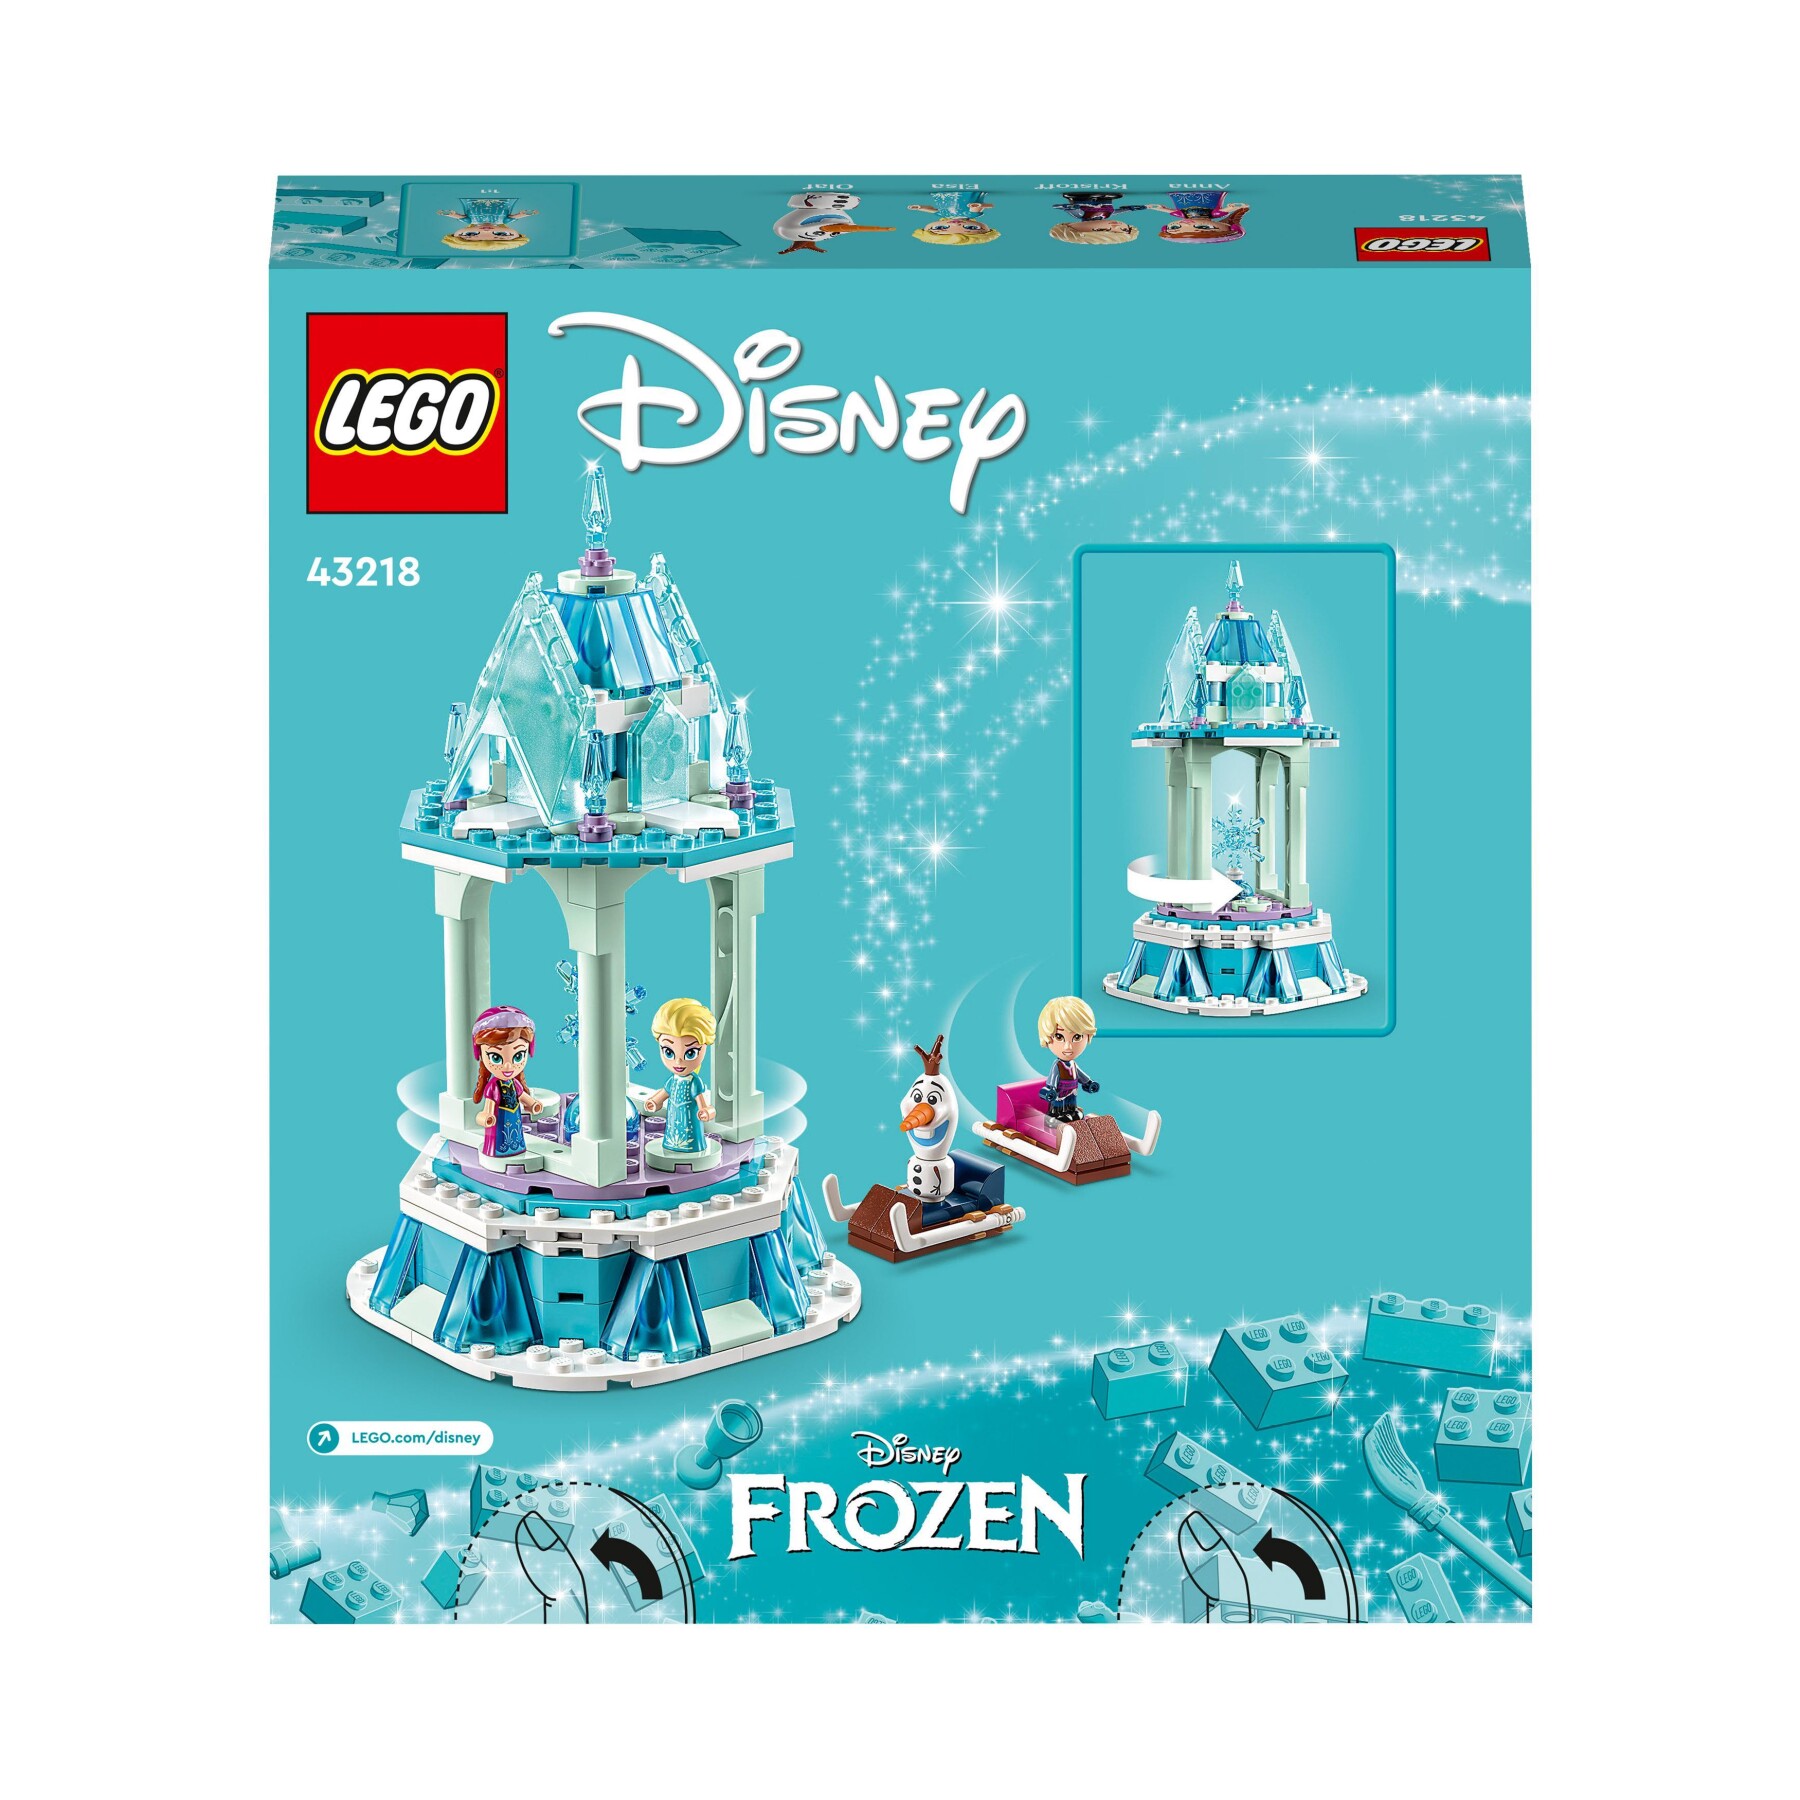 Lego disney frozen 43218 la giostra magica di anna ed elsa ispirato al castello di frozen con micro bambolina della principessa - DISNEY PRINCESS, LEGO DISNEY PRINCESS, Frozen